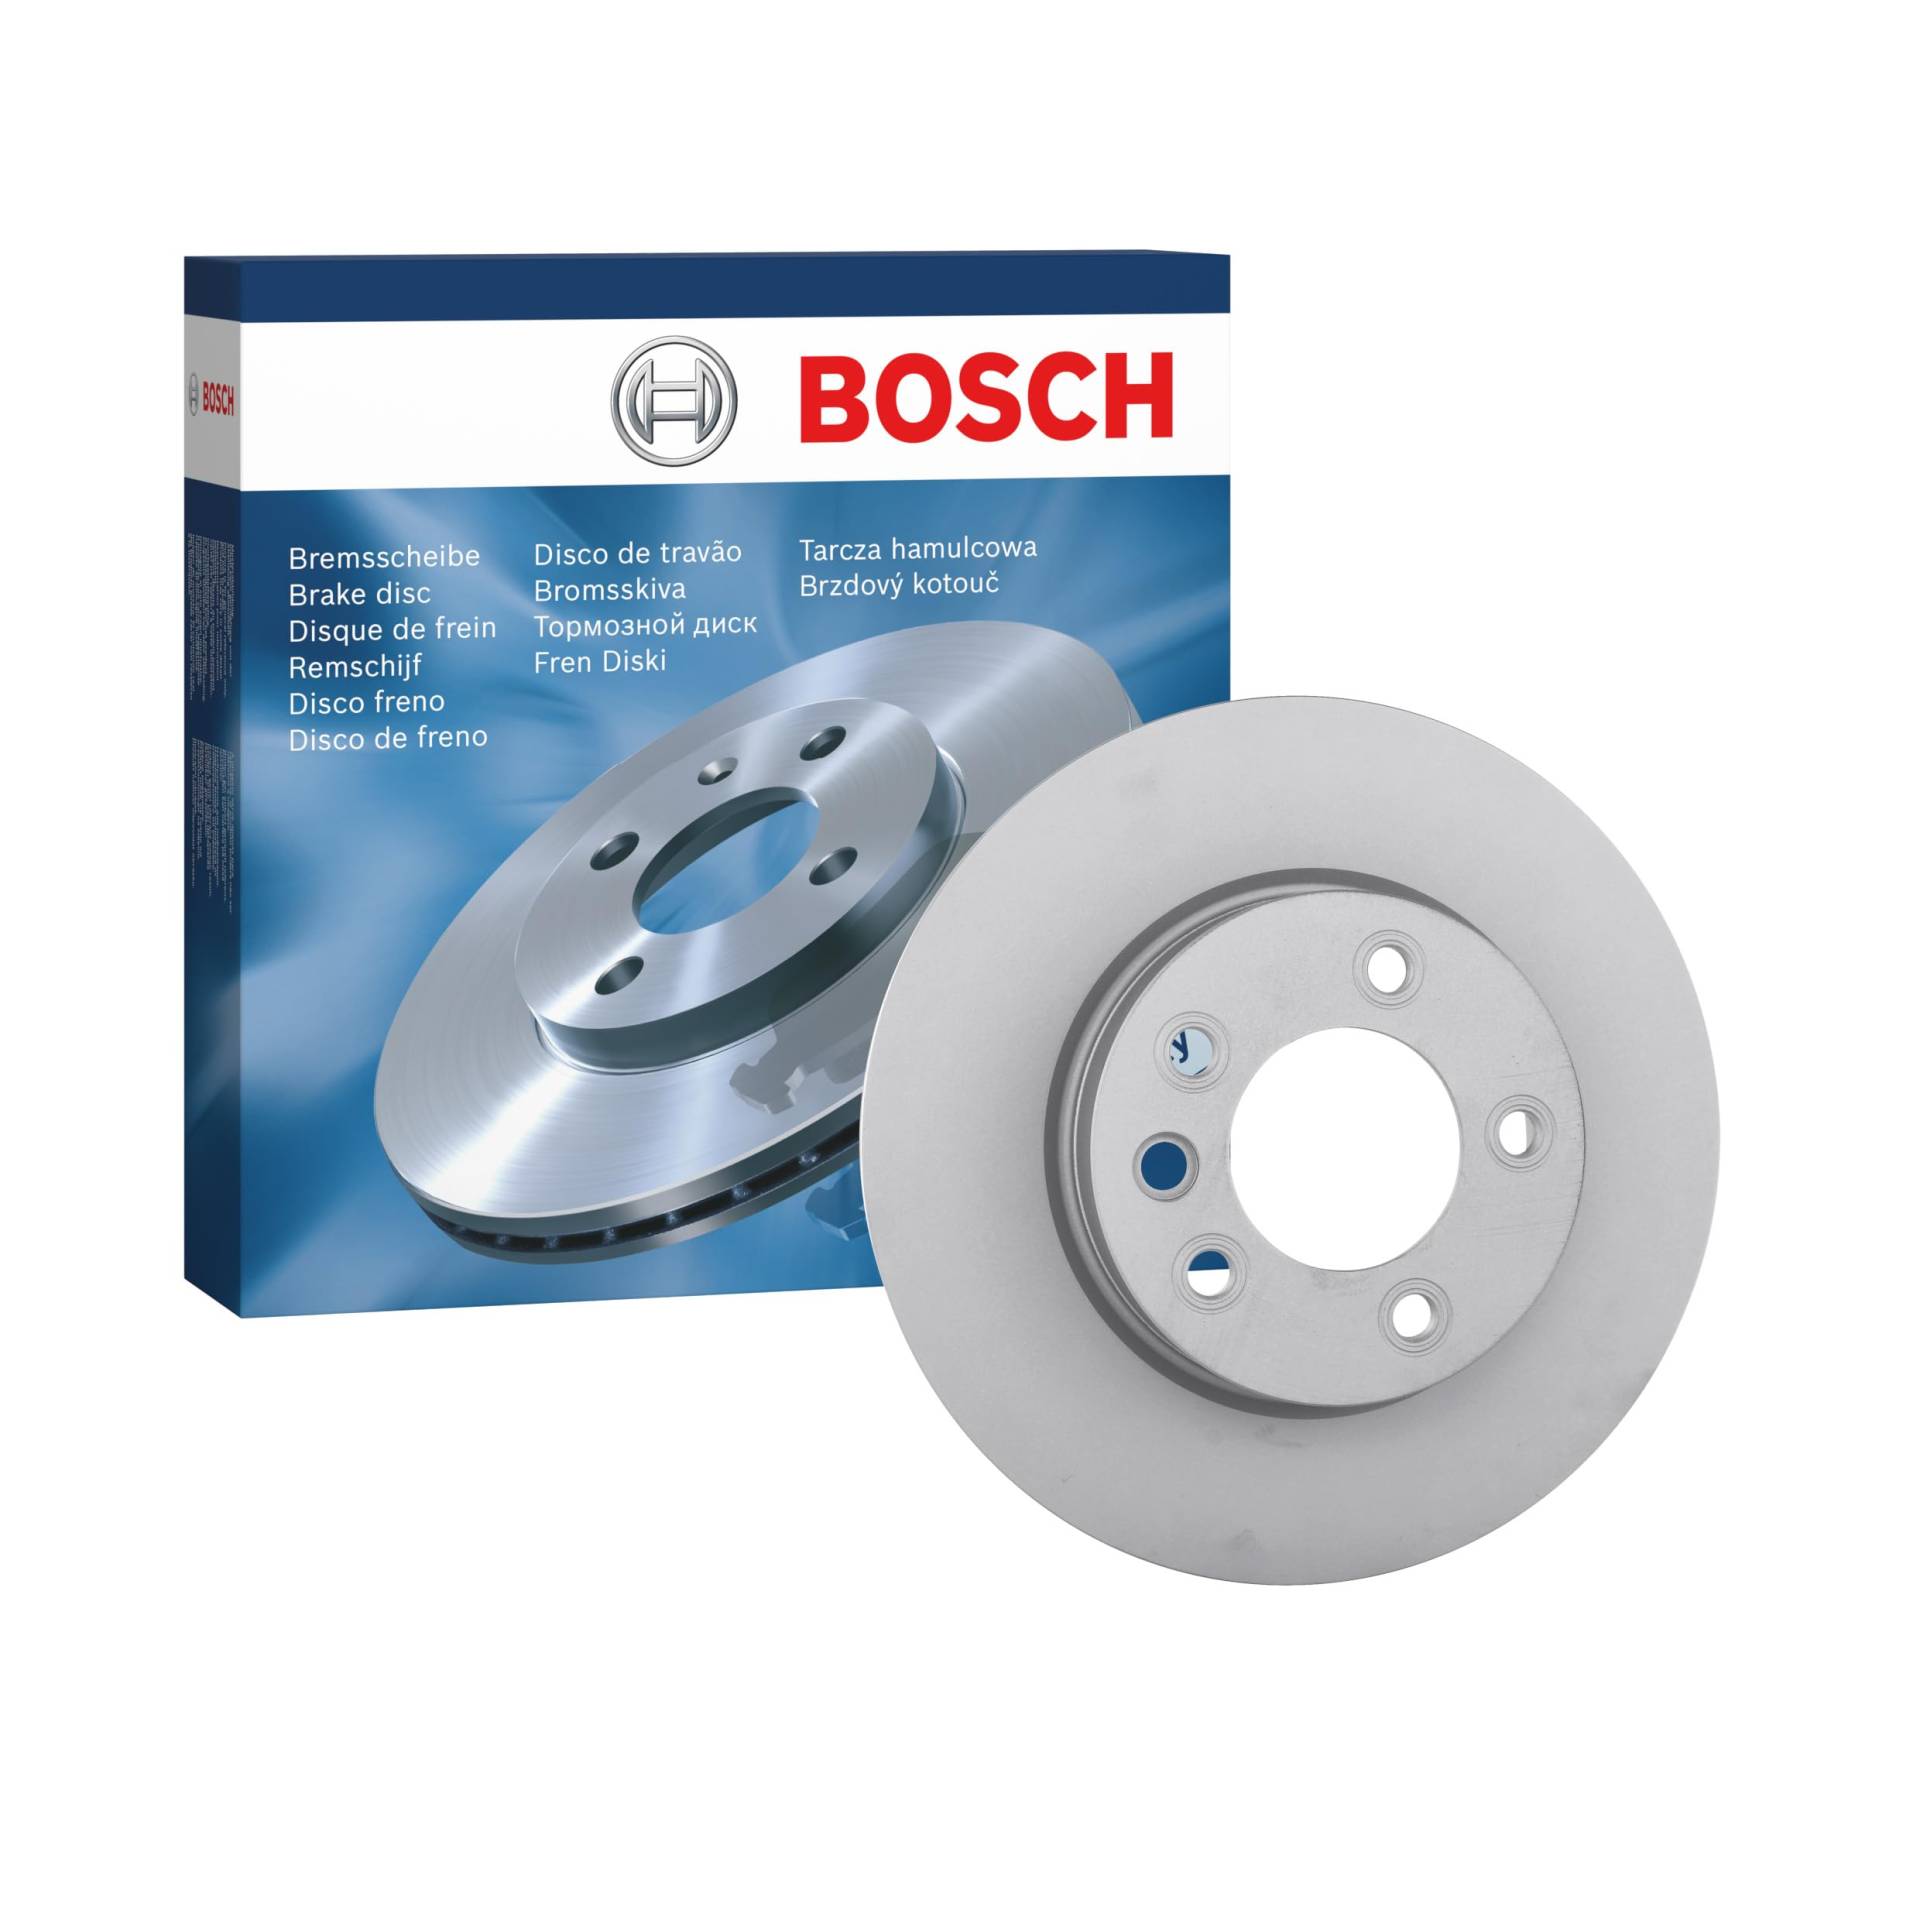 Bosch BD1113 Bremsscheiben - Vorderachse - ECE-R90 Zertifizierung - eine Bremsscheibe von Bosch Automotive